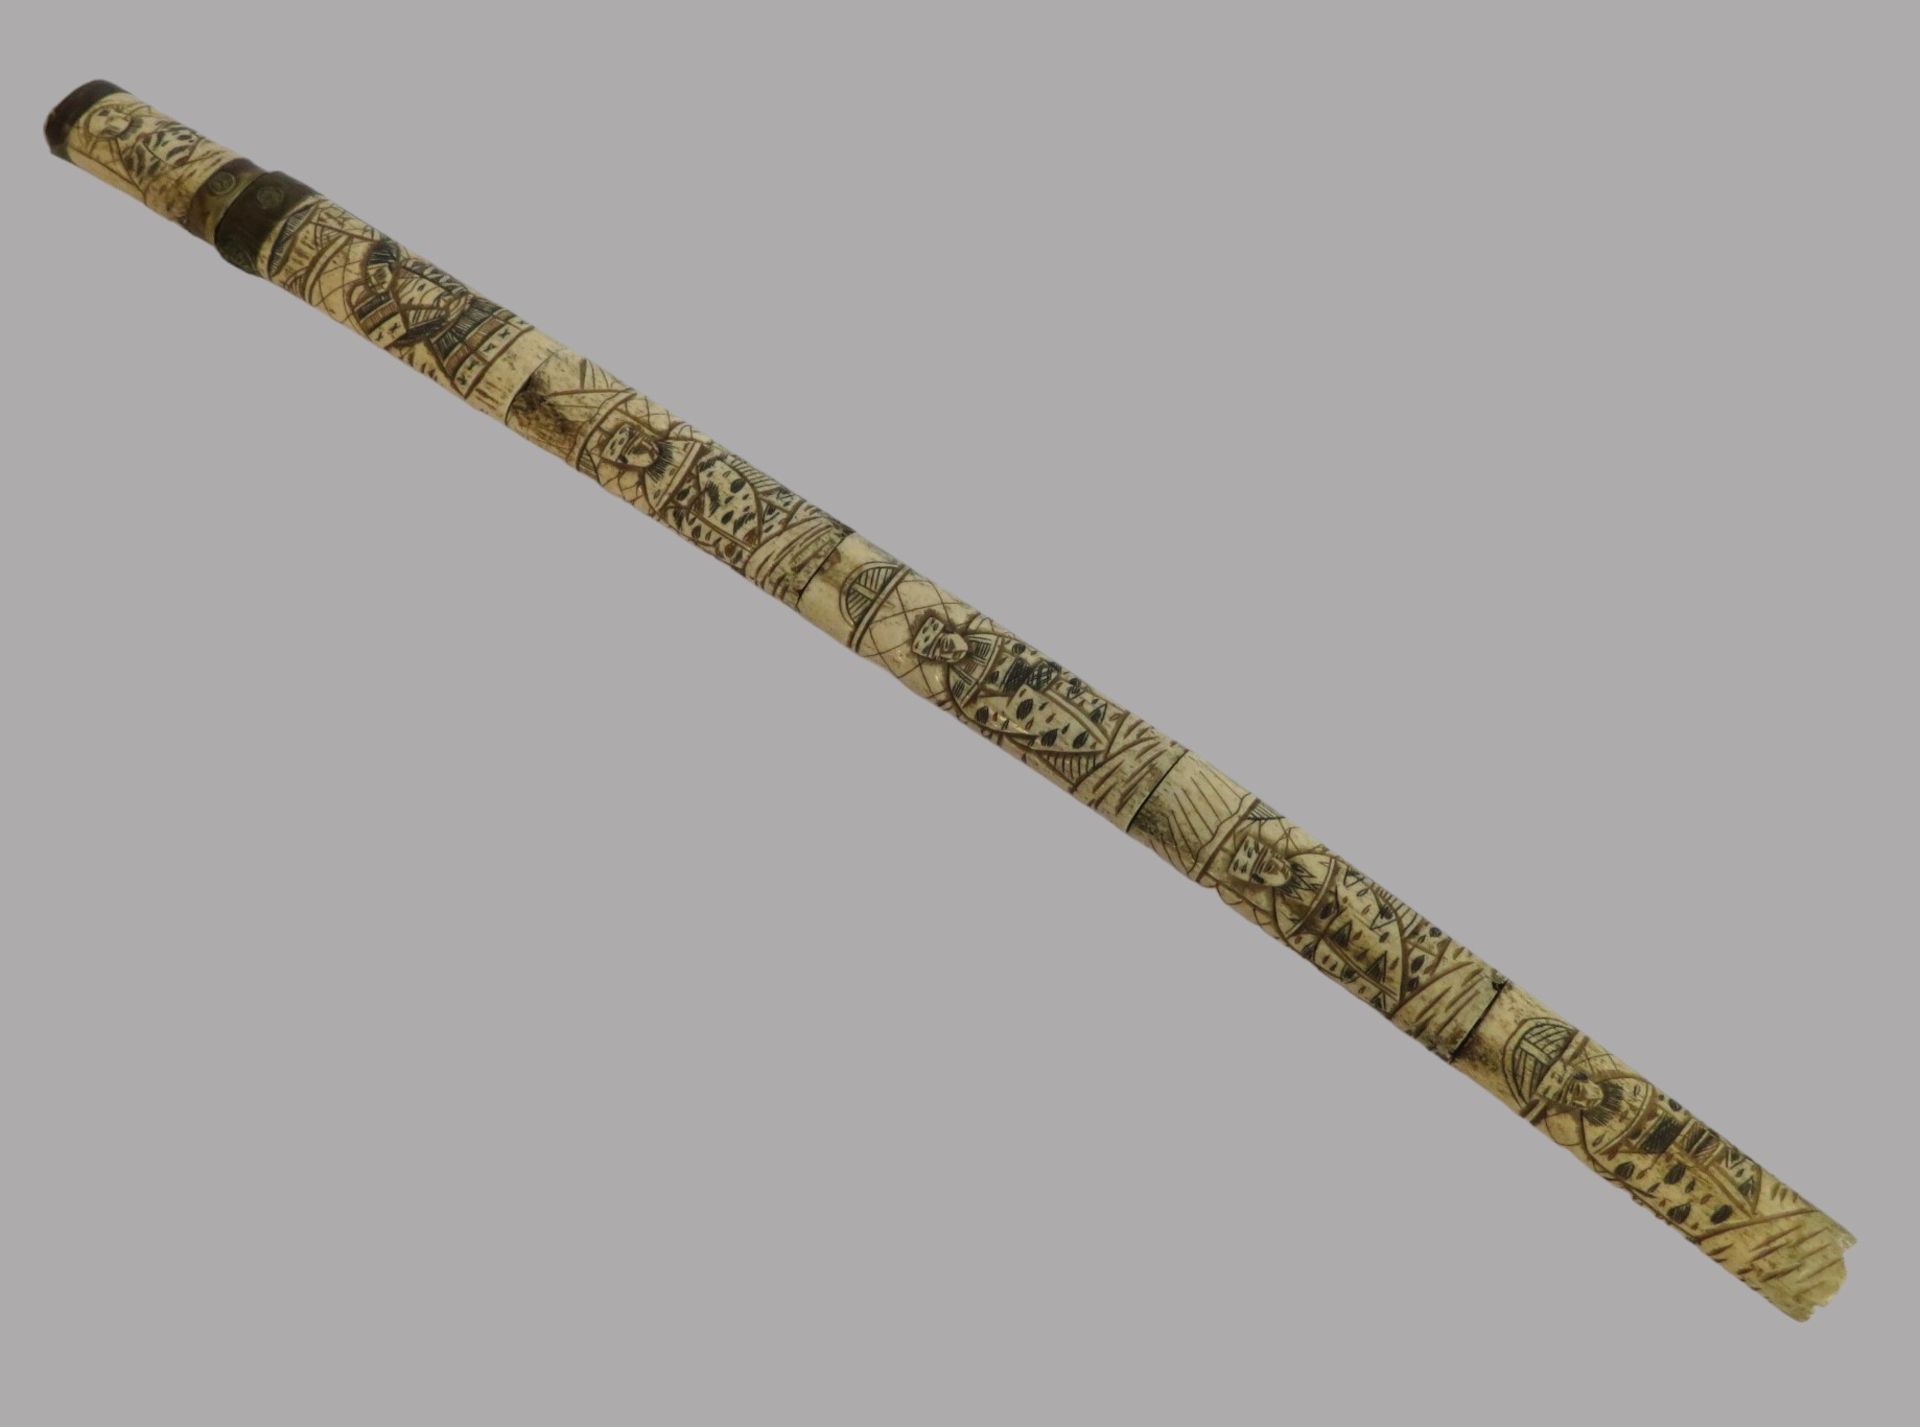 Samurai-Schwert in Scheide, 19. Jahrhundert, Bein geschnitzt, l 70 cm, b 4 cm.